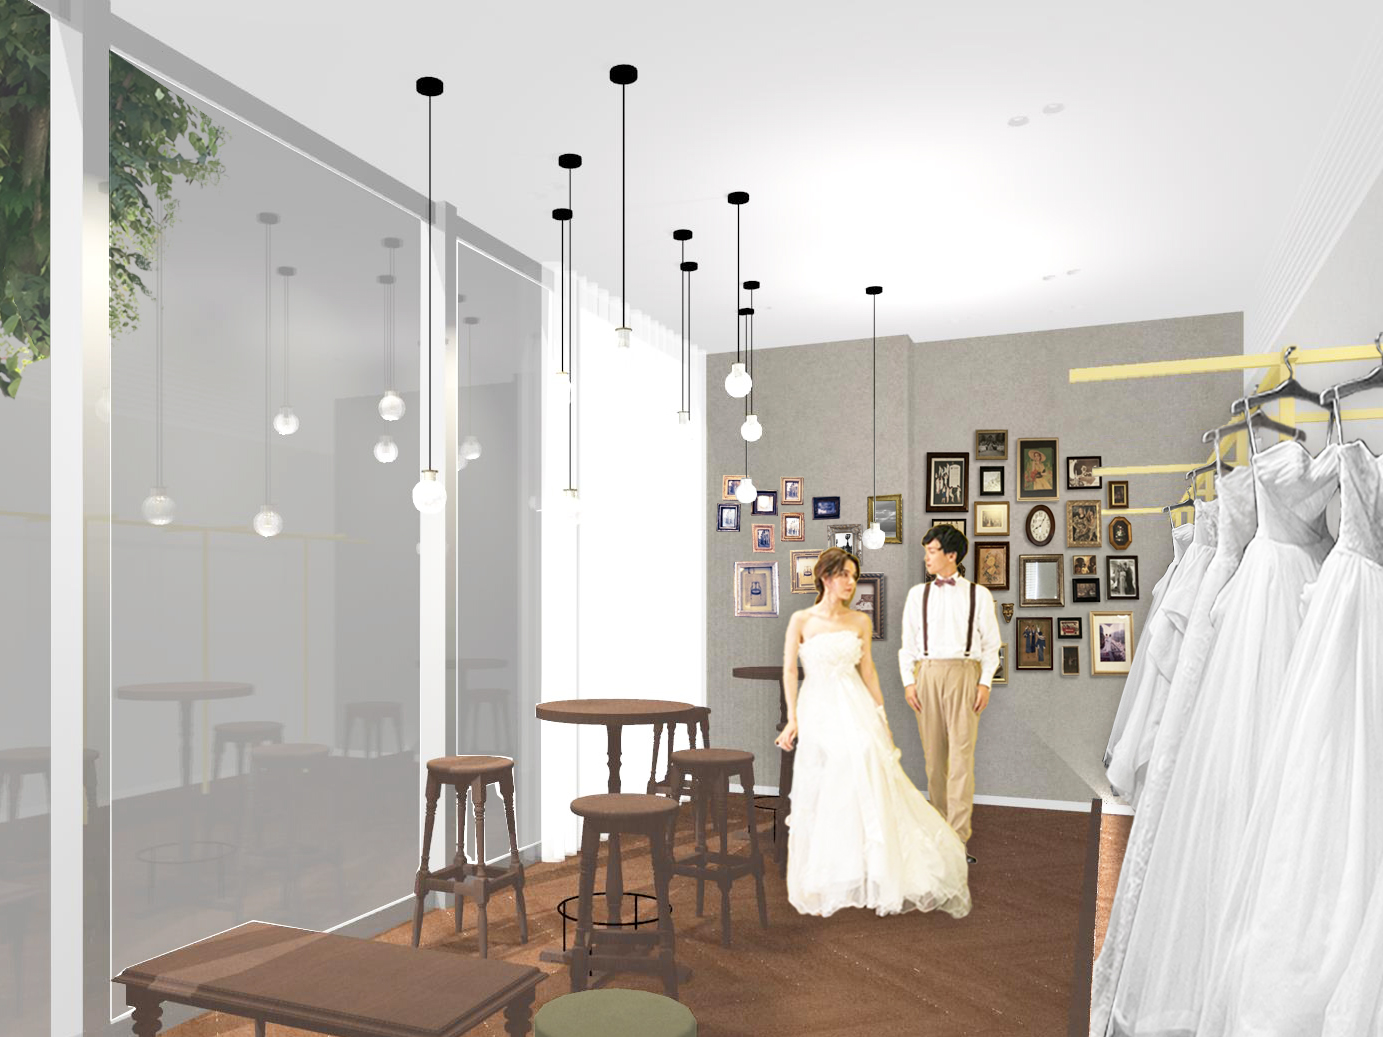 岡山県にウェディングサービス複合店が誕生
「ワタベウェディング 岡山店」
2022年10月15日（土）リニューアルオープン
～リゾ婚サロン・フォトスタジオ・婚礼衣裳サロンをワンフロアに併設～
